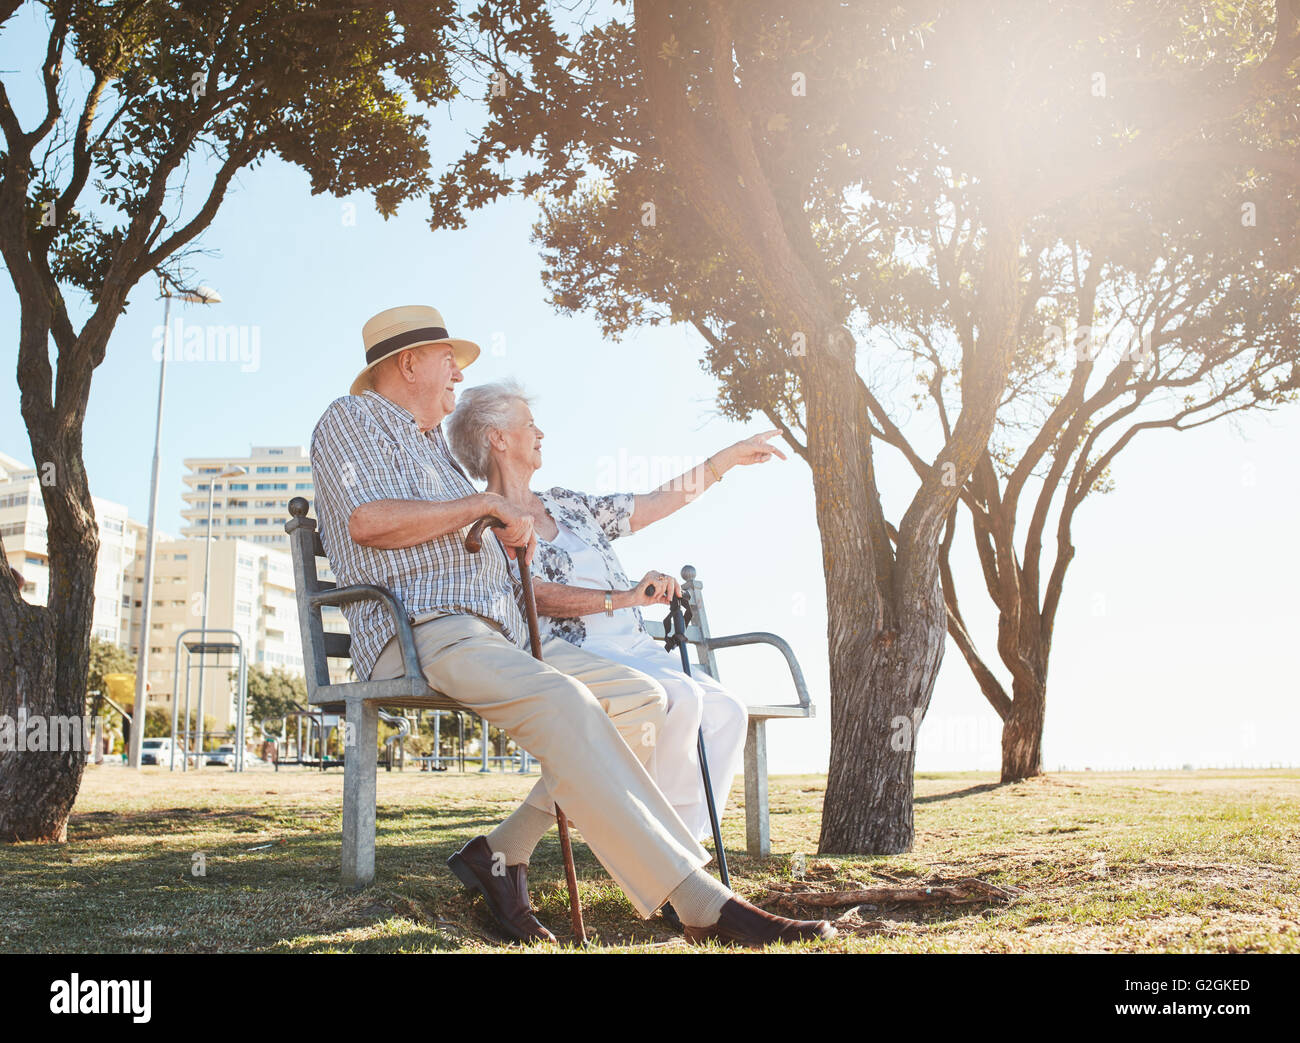 Tourné en plein air d'un couple assis sur un banc de parc avec femme montrant quelque chose d'intéressant à son mari. Couple de retraités Banque D'Images